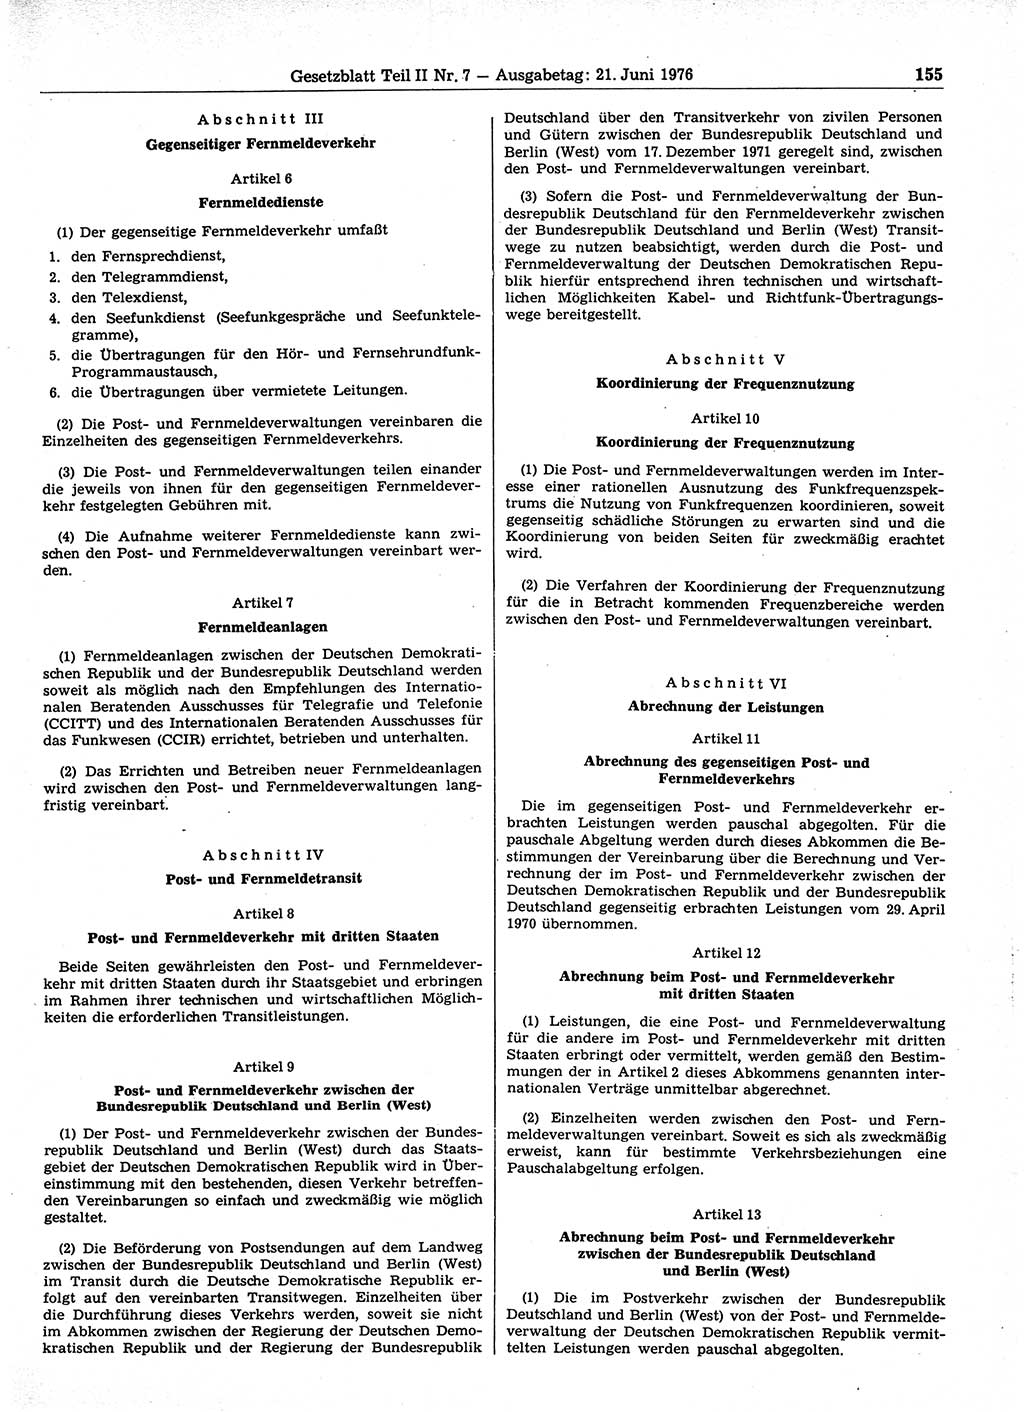 Gesetzblatt (GBl.) der Deutschen Demokratischen Republik (DDR) Teil ⅠⅠ 1976, Seite 155 (GBl. DDR ⅠⅠ 1976, S. 155)